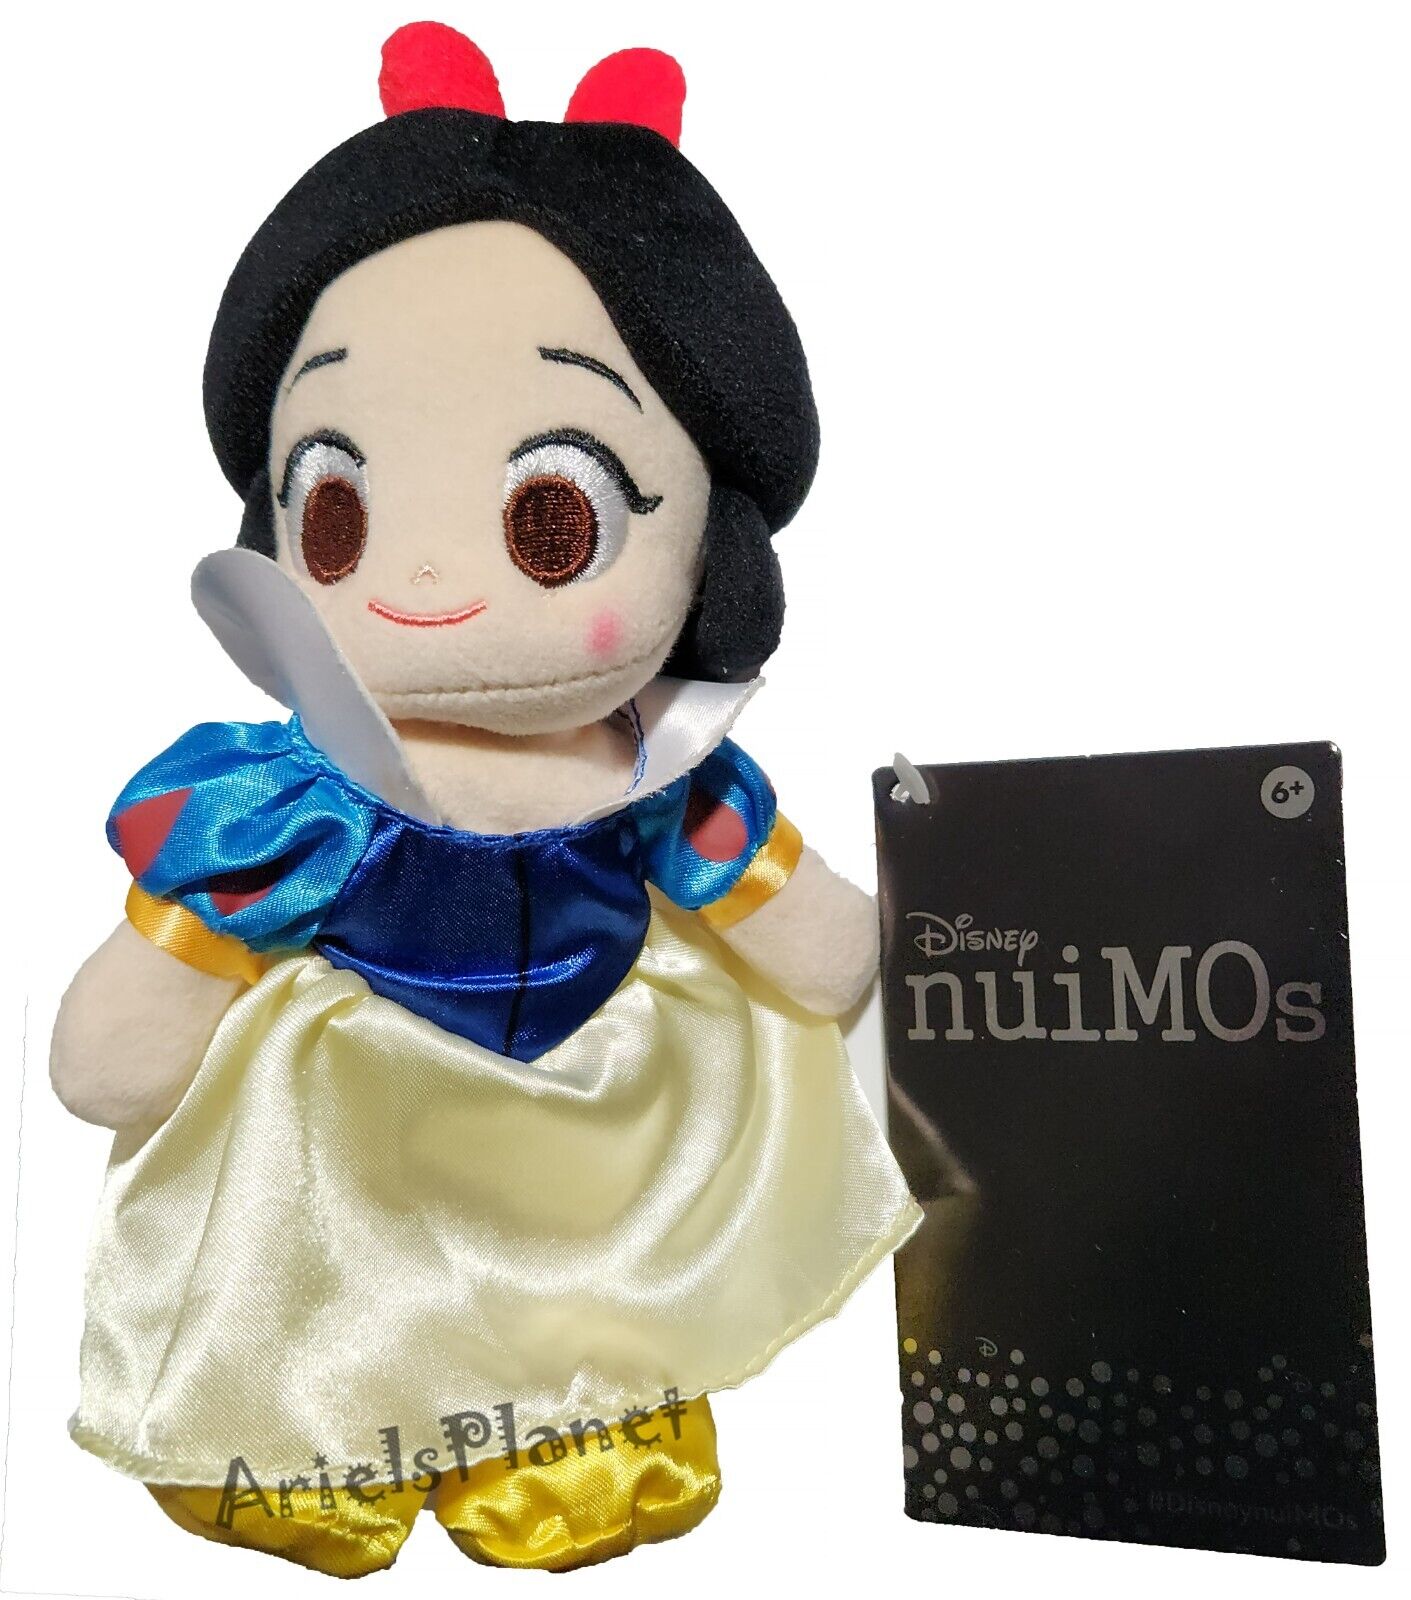 Disney Parks Snow White nuiMOs Posable Plush Doll Toy